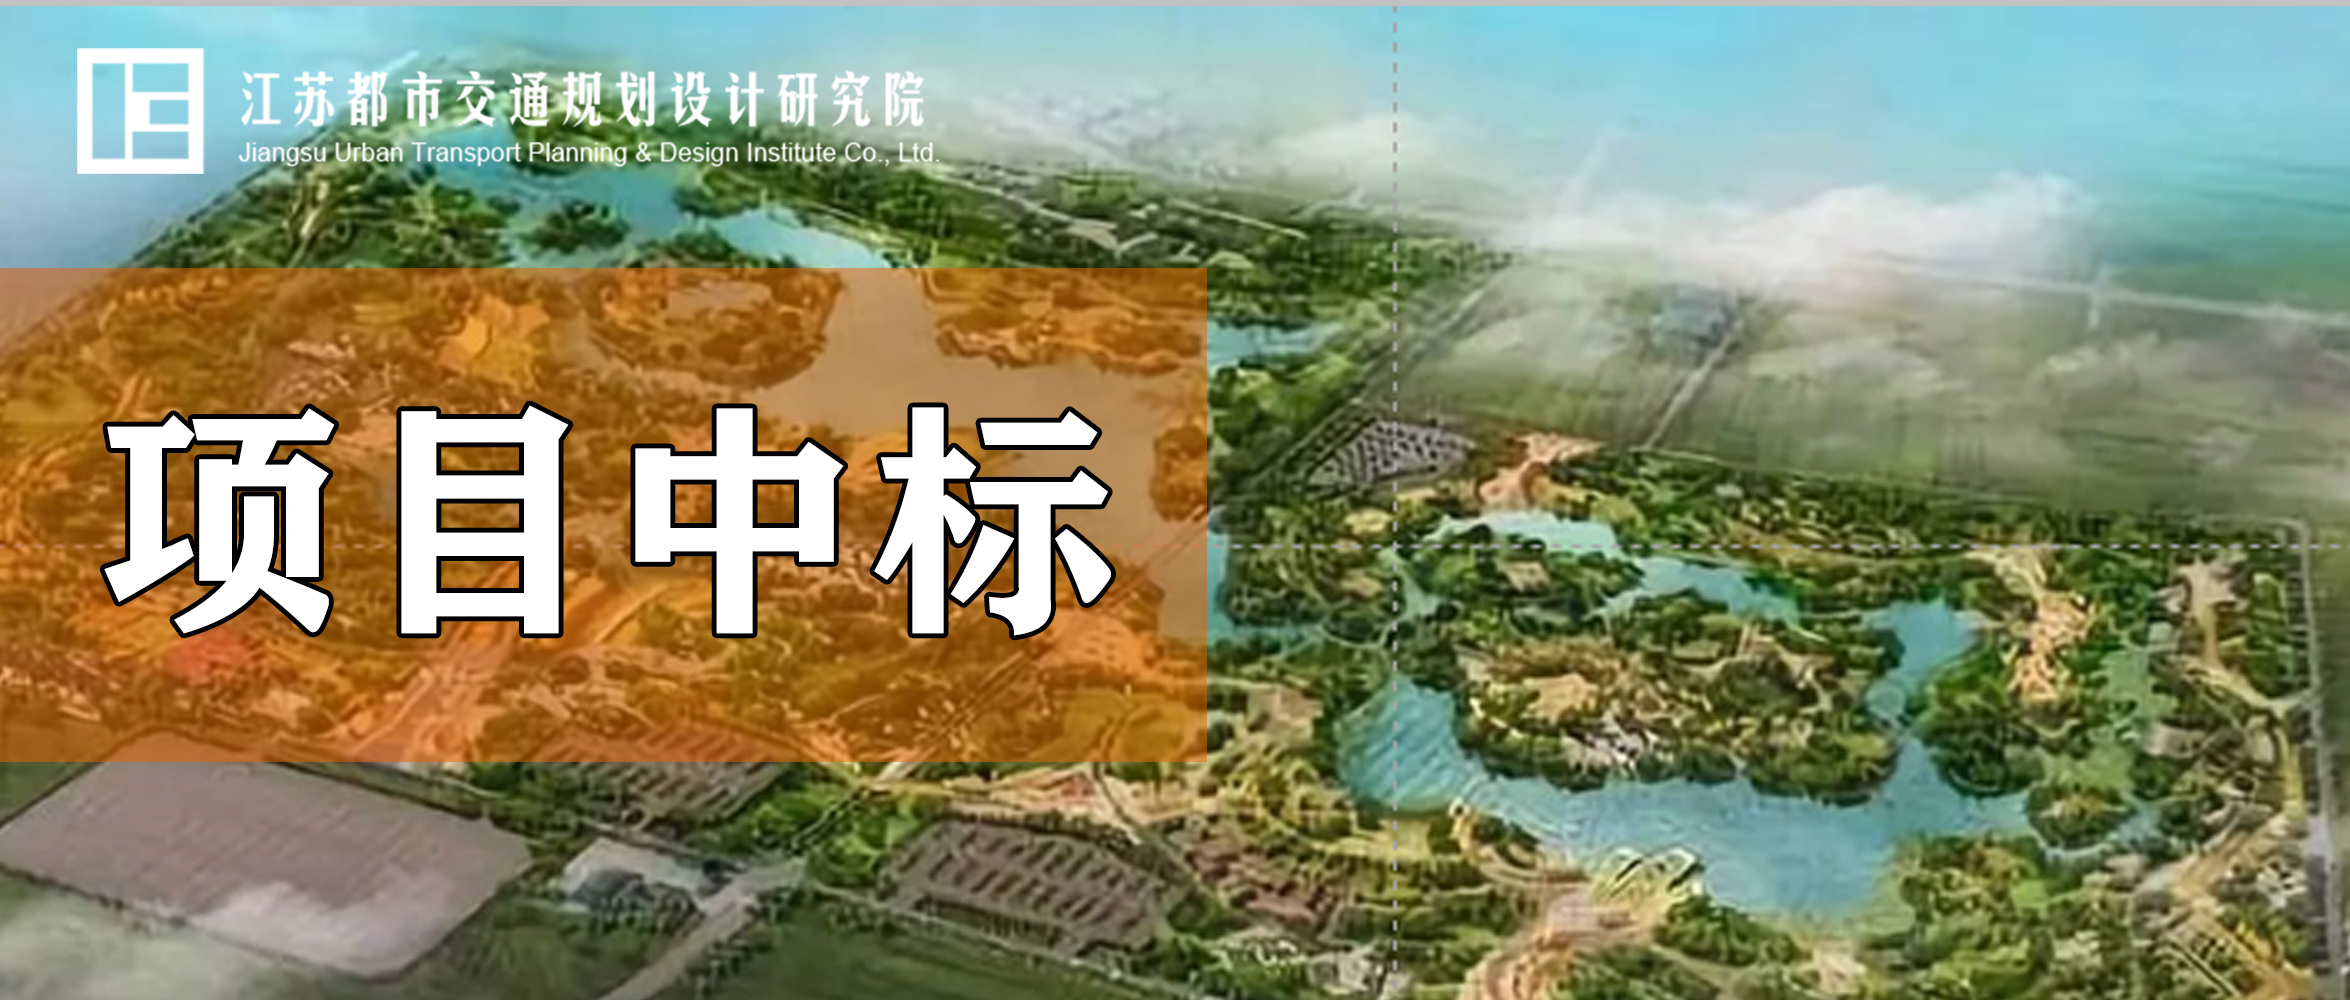 项目中标丨2021年扬州世界园艺博览会出行交通组织深化研究